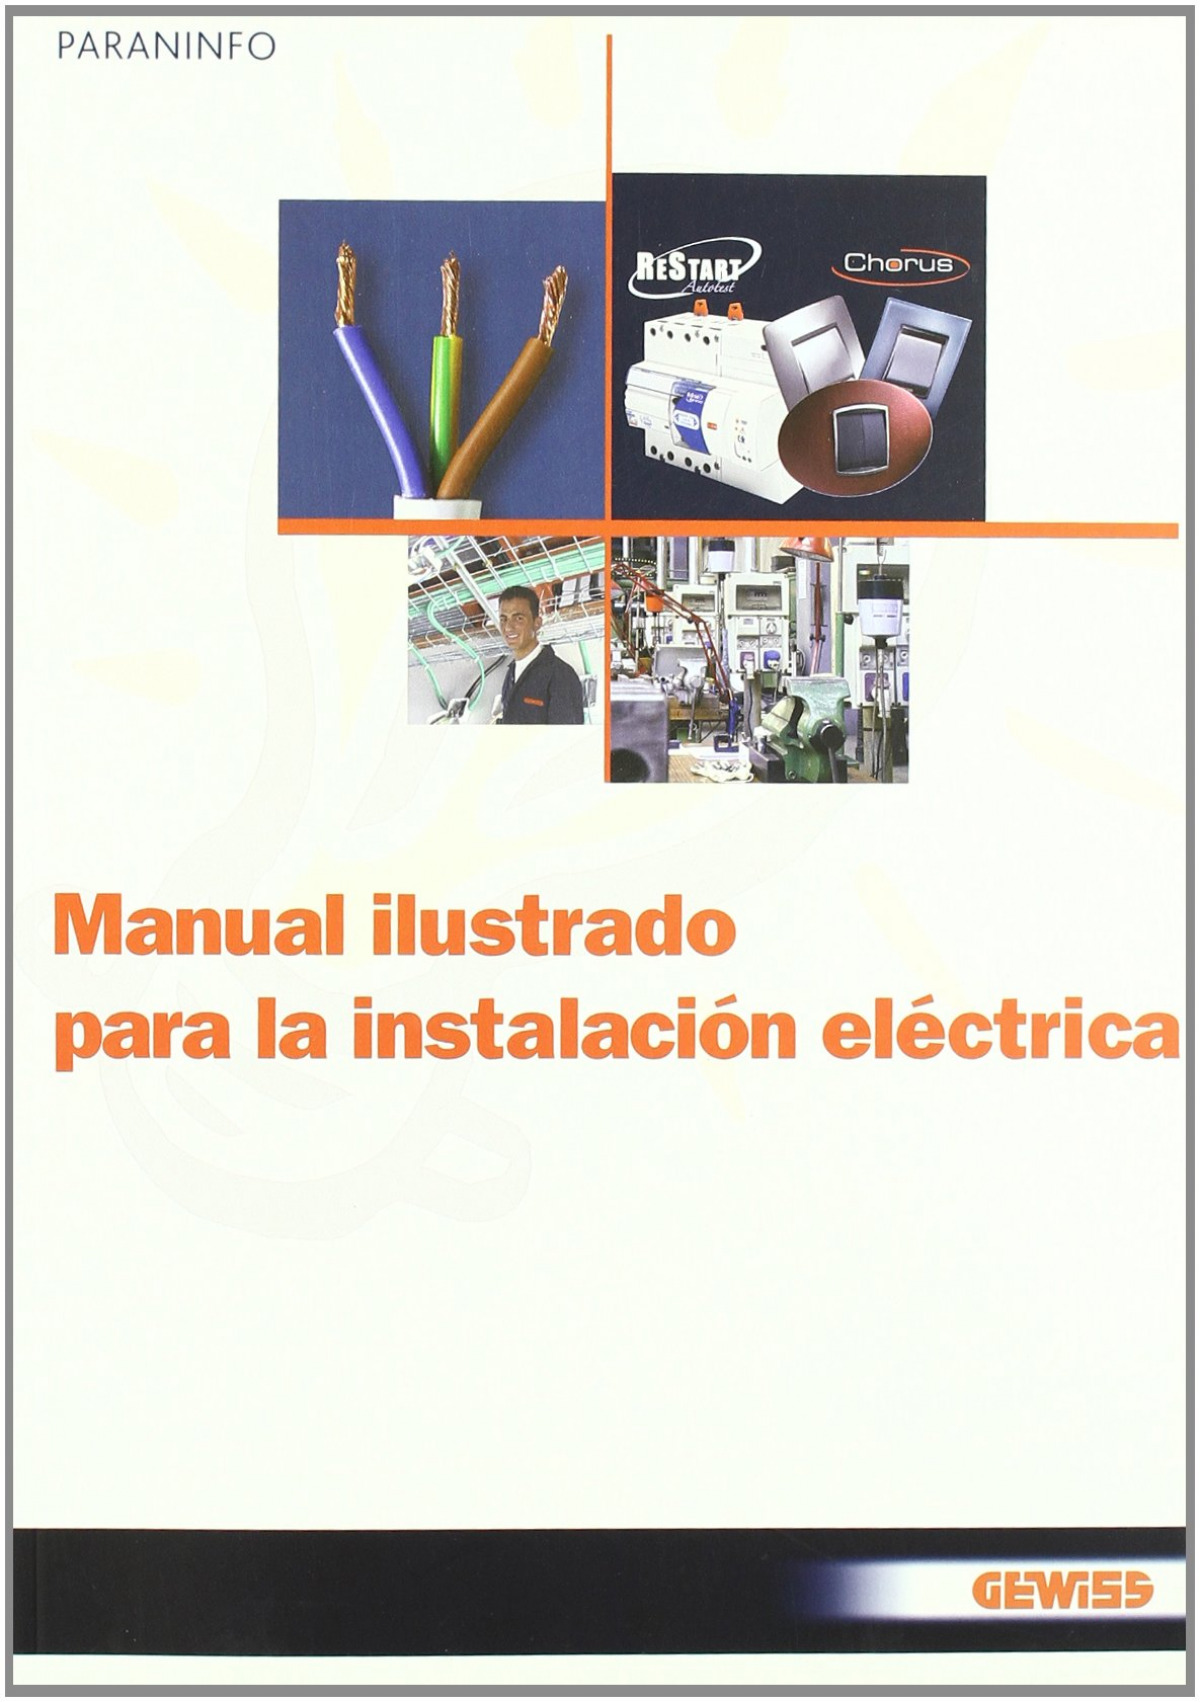 Manual ilustrado para la instalación eléctrica - Gewiss